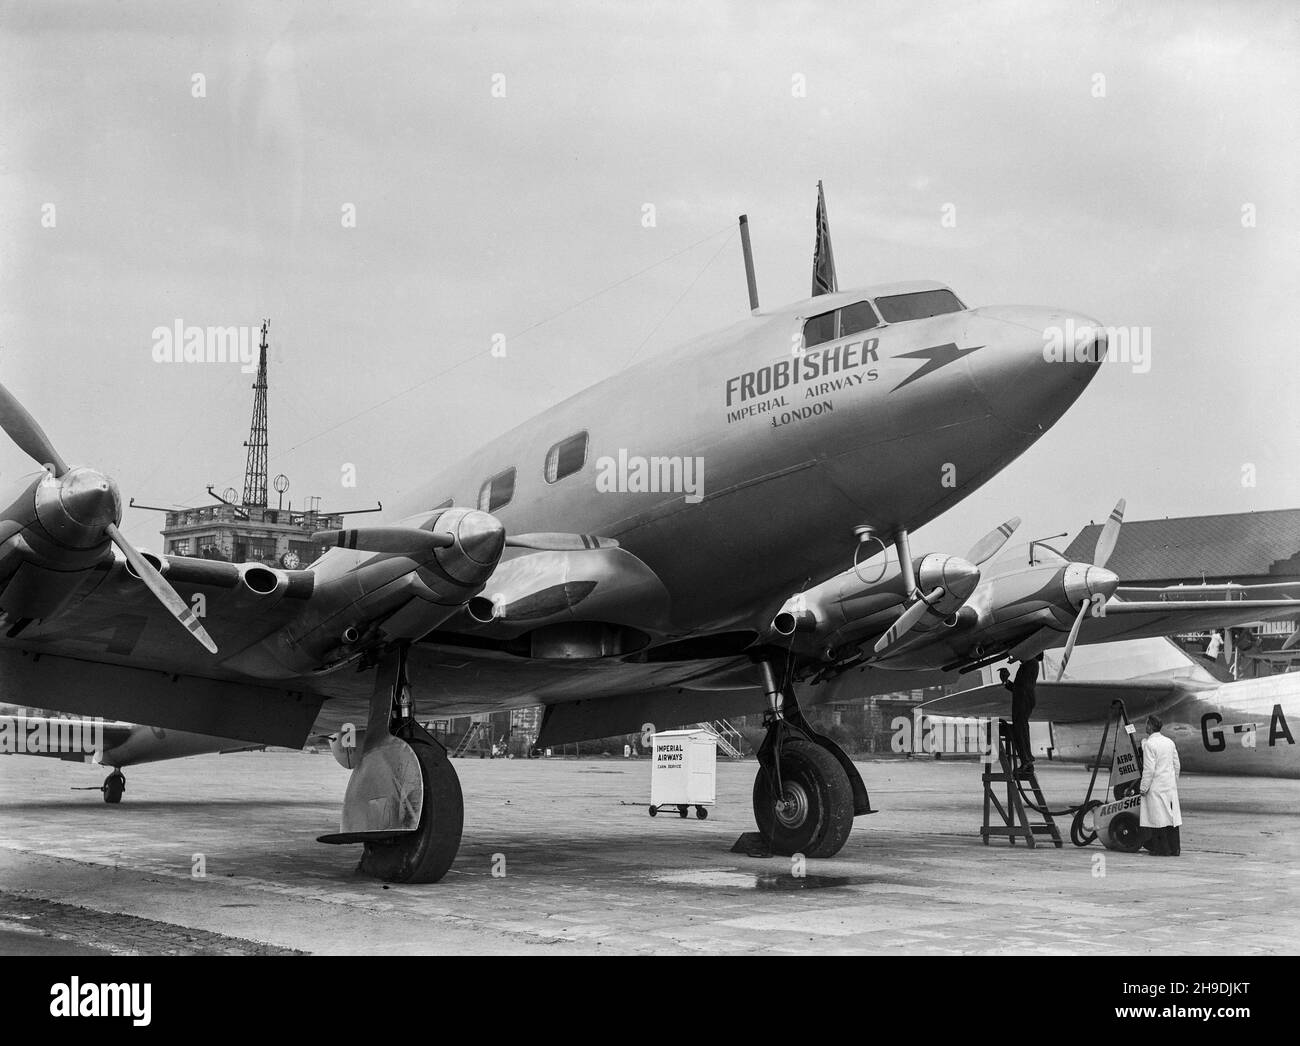 Fotografia vintage in bianco e nero scattata nel 1938 con un De Havilland DH.91 Albatross, numero di serie G-AFDI, chiamato Frobisher, della Imperial Airways a Croydon Aerodrome, fuori Londra. Foto Stock